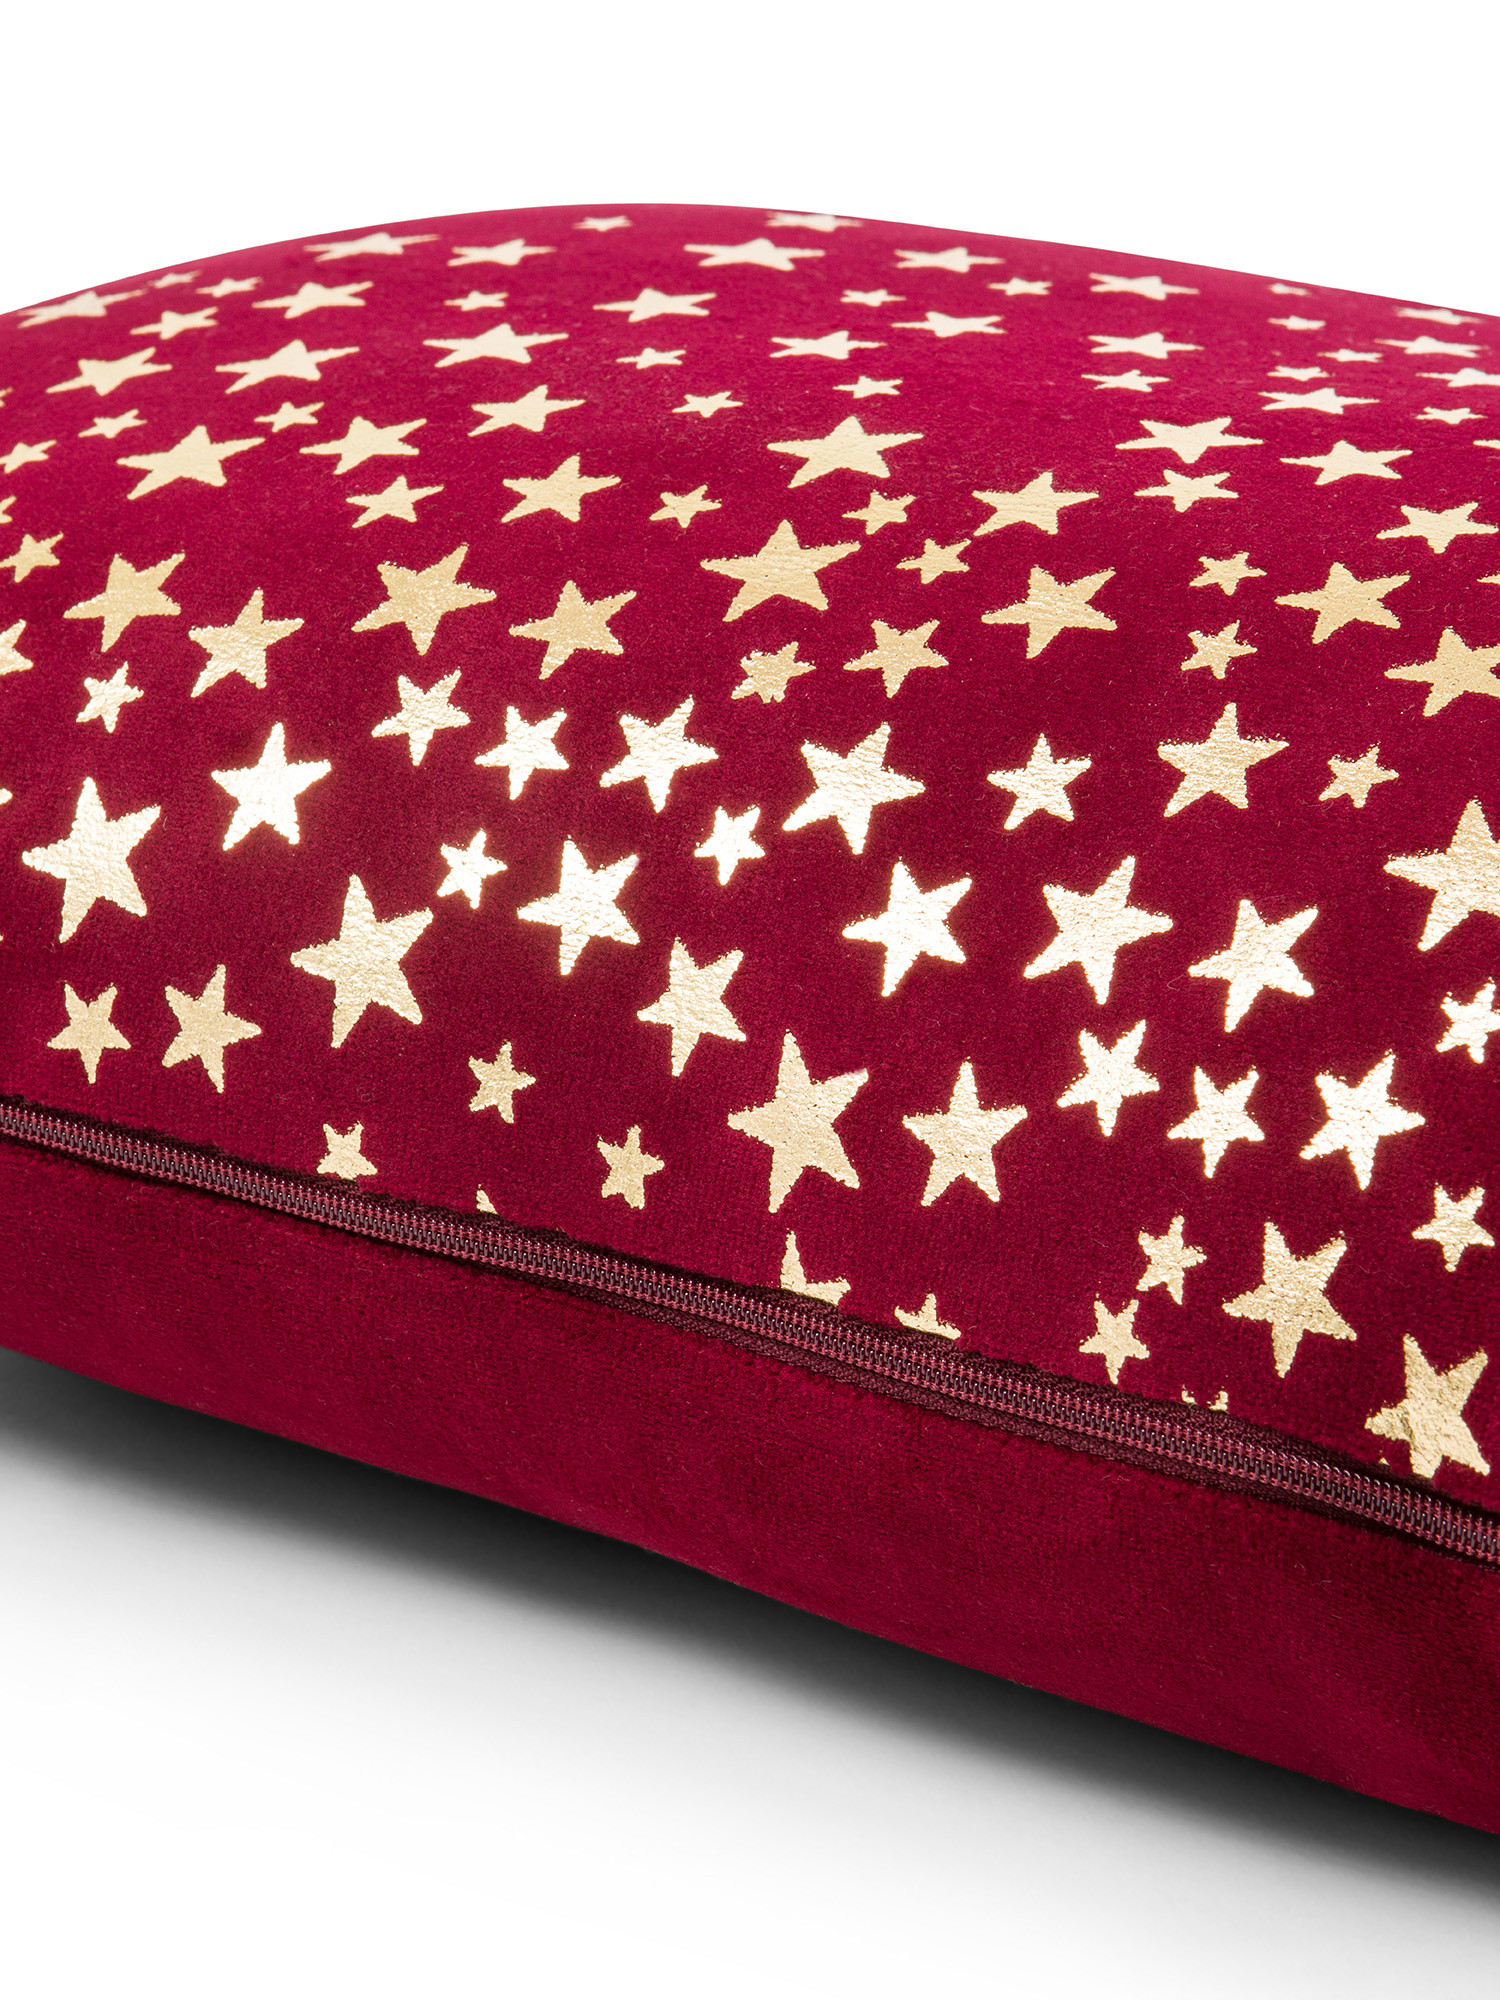 Star print velvet cushion 35x55cm, Dark Red, large image number 2